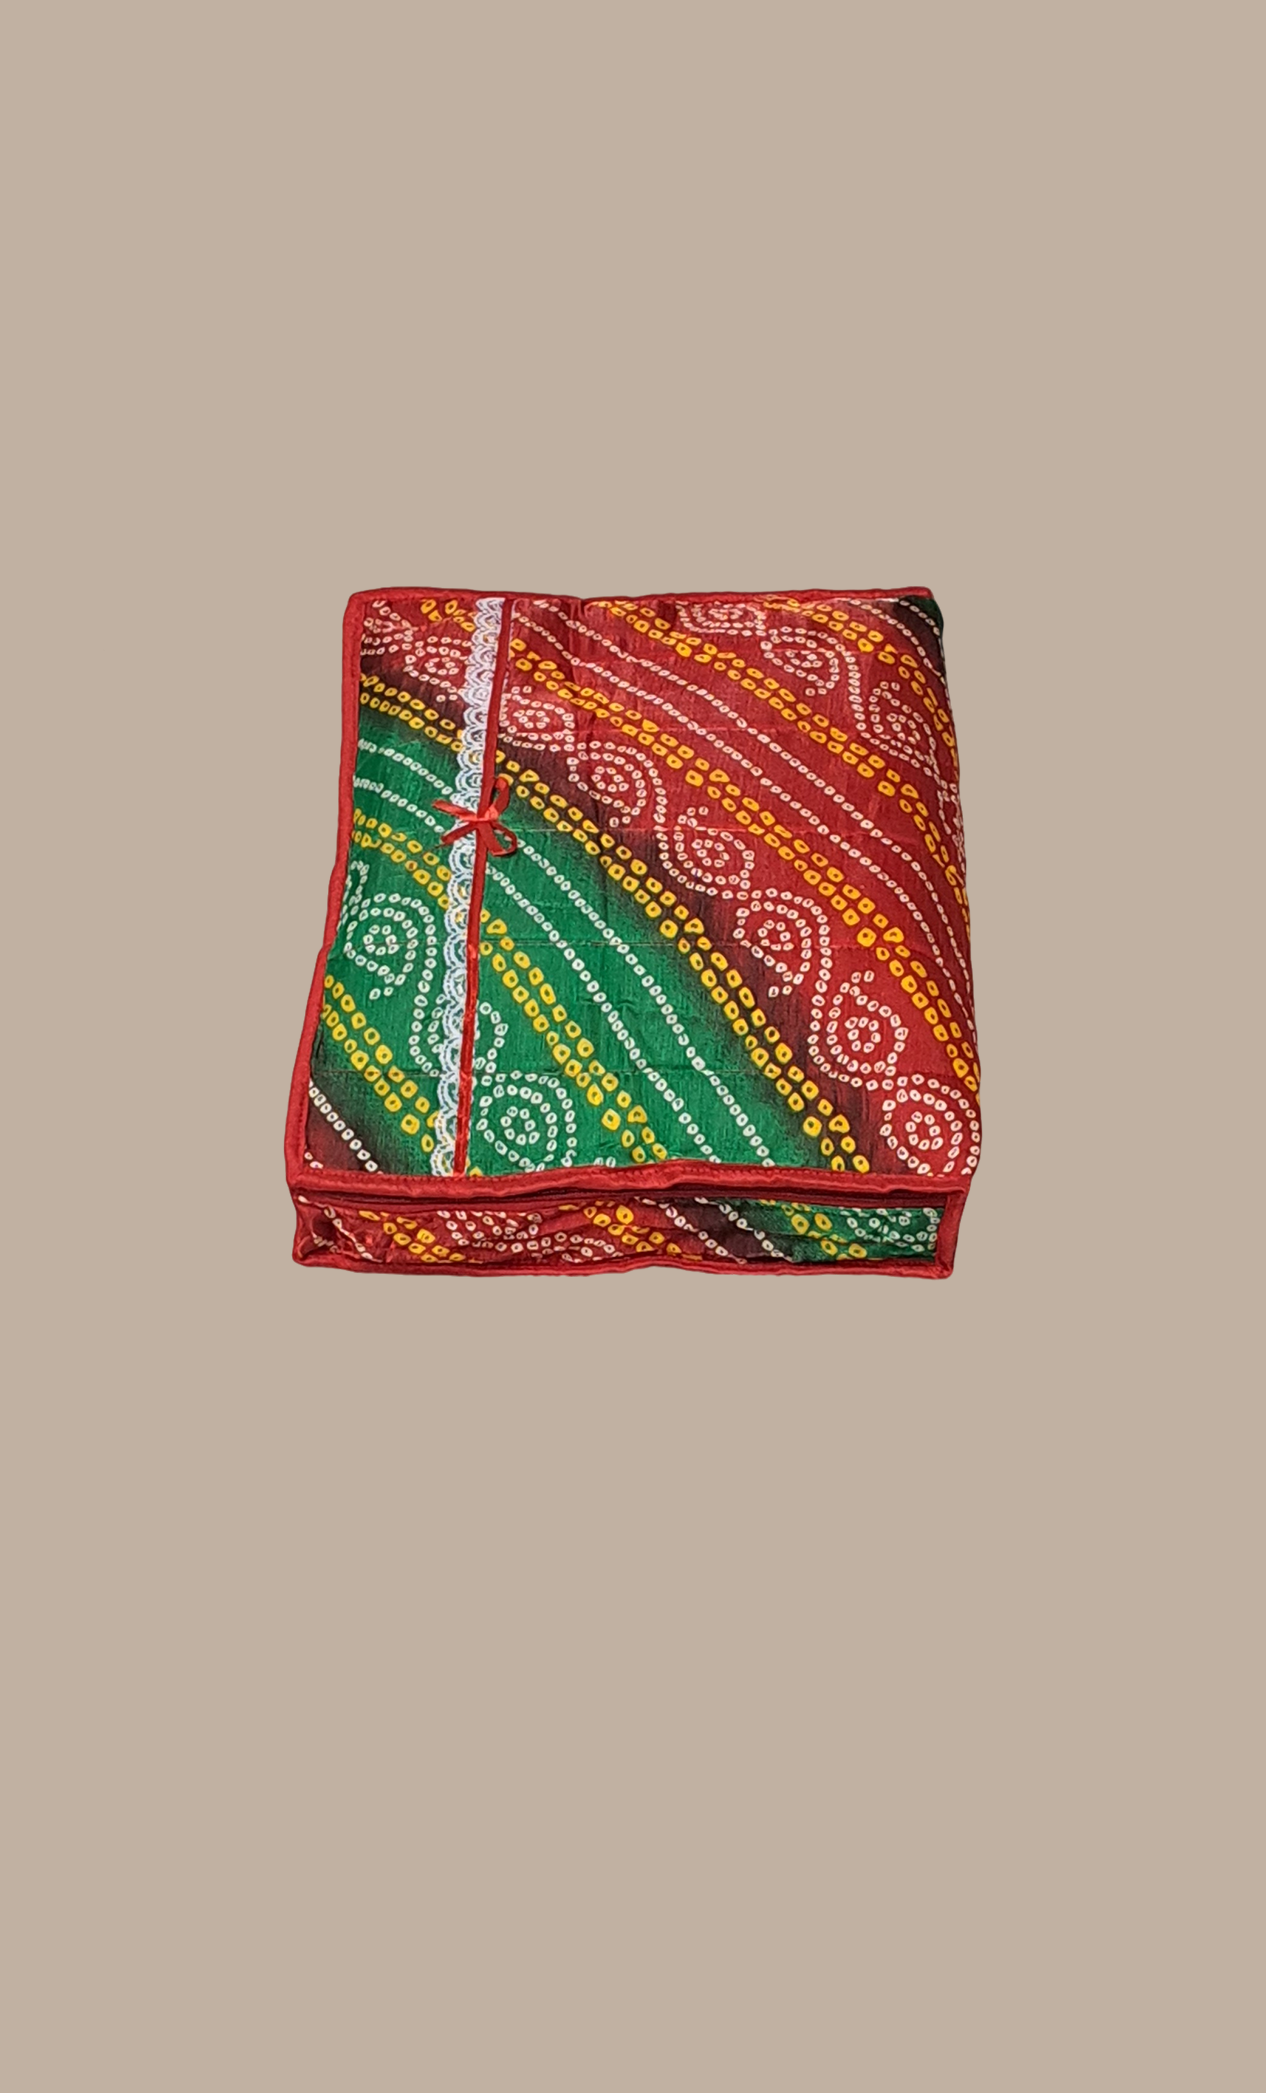 Maroon Bandhani Double Sari Cover